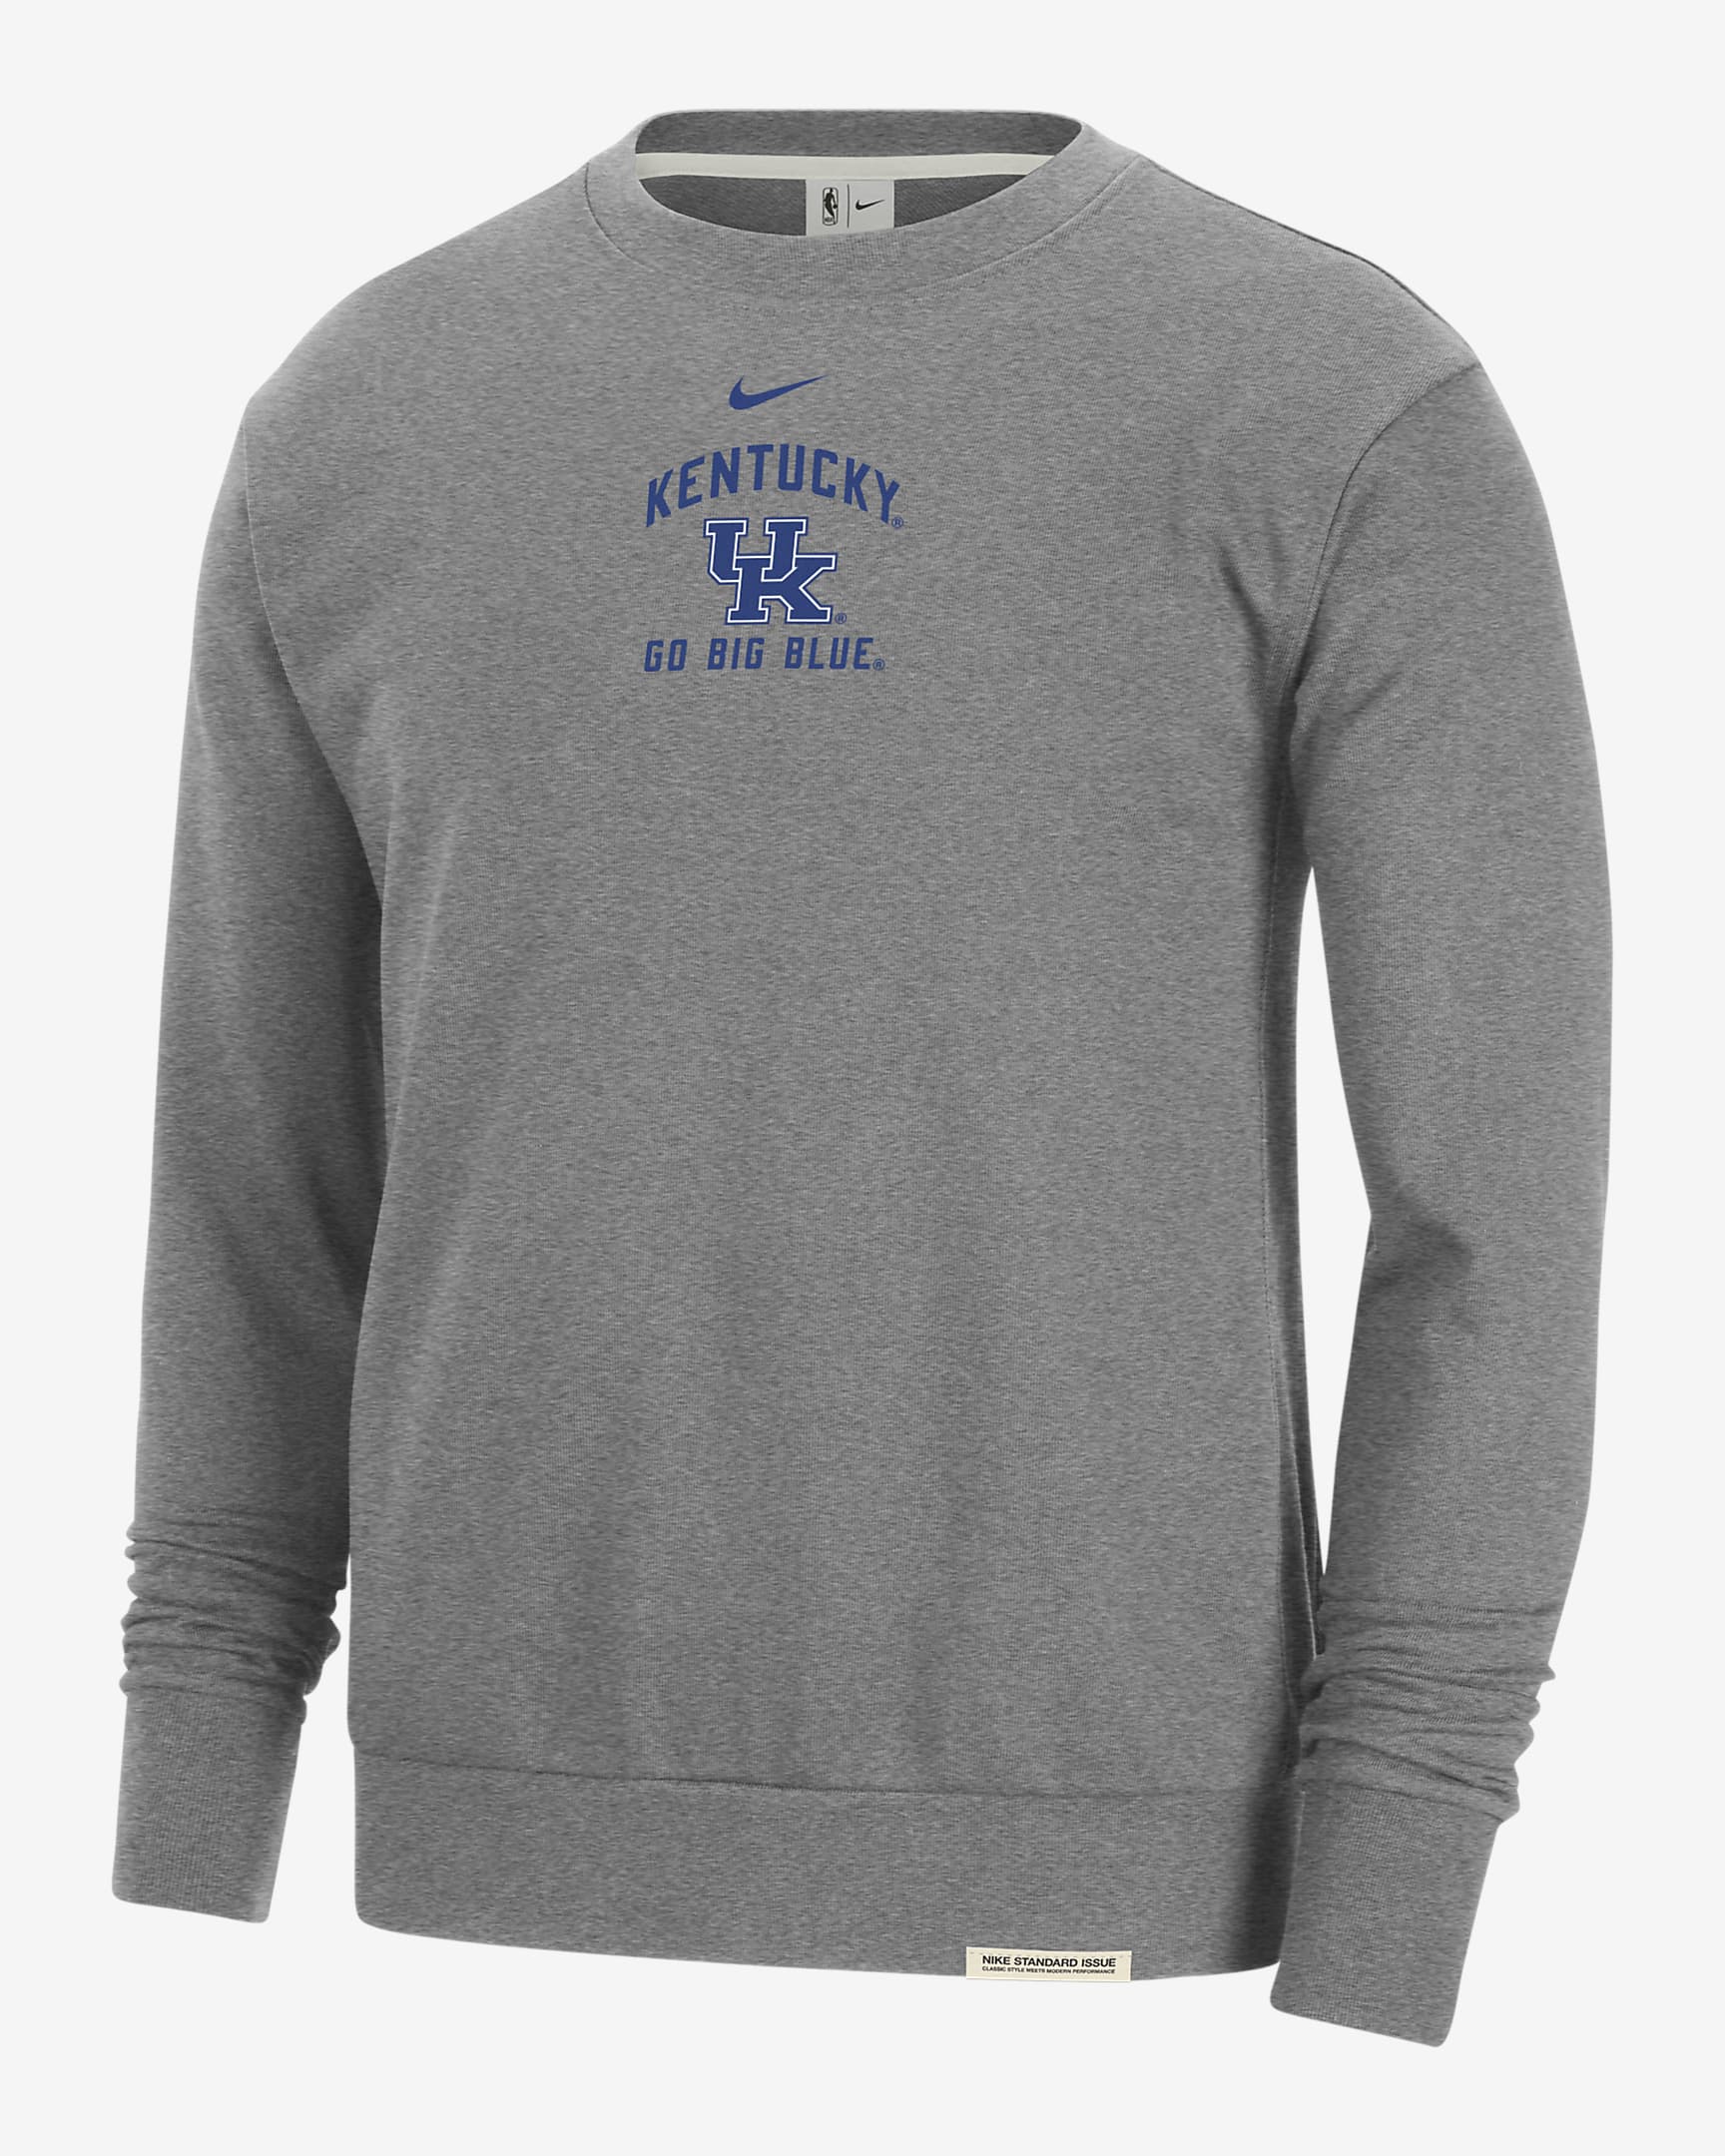 Kentucky Standard Issue Men's Nike College Fleece Crew-Neck Sweatshirt ...